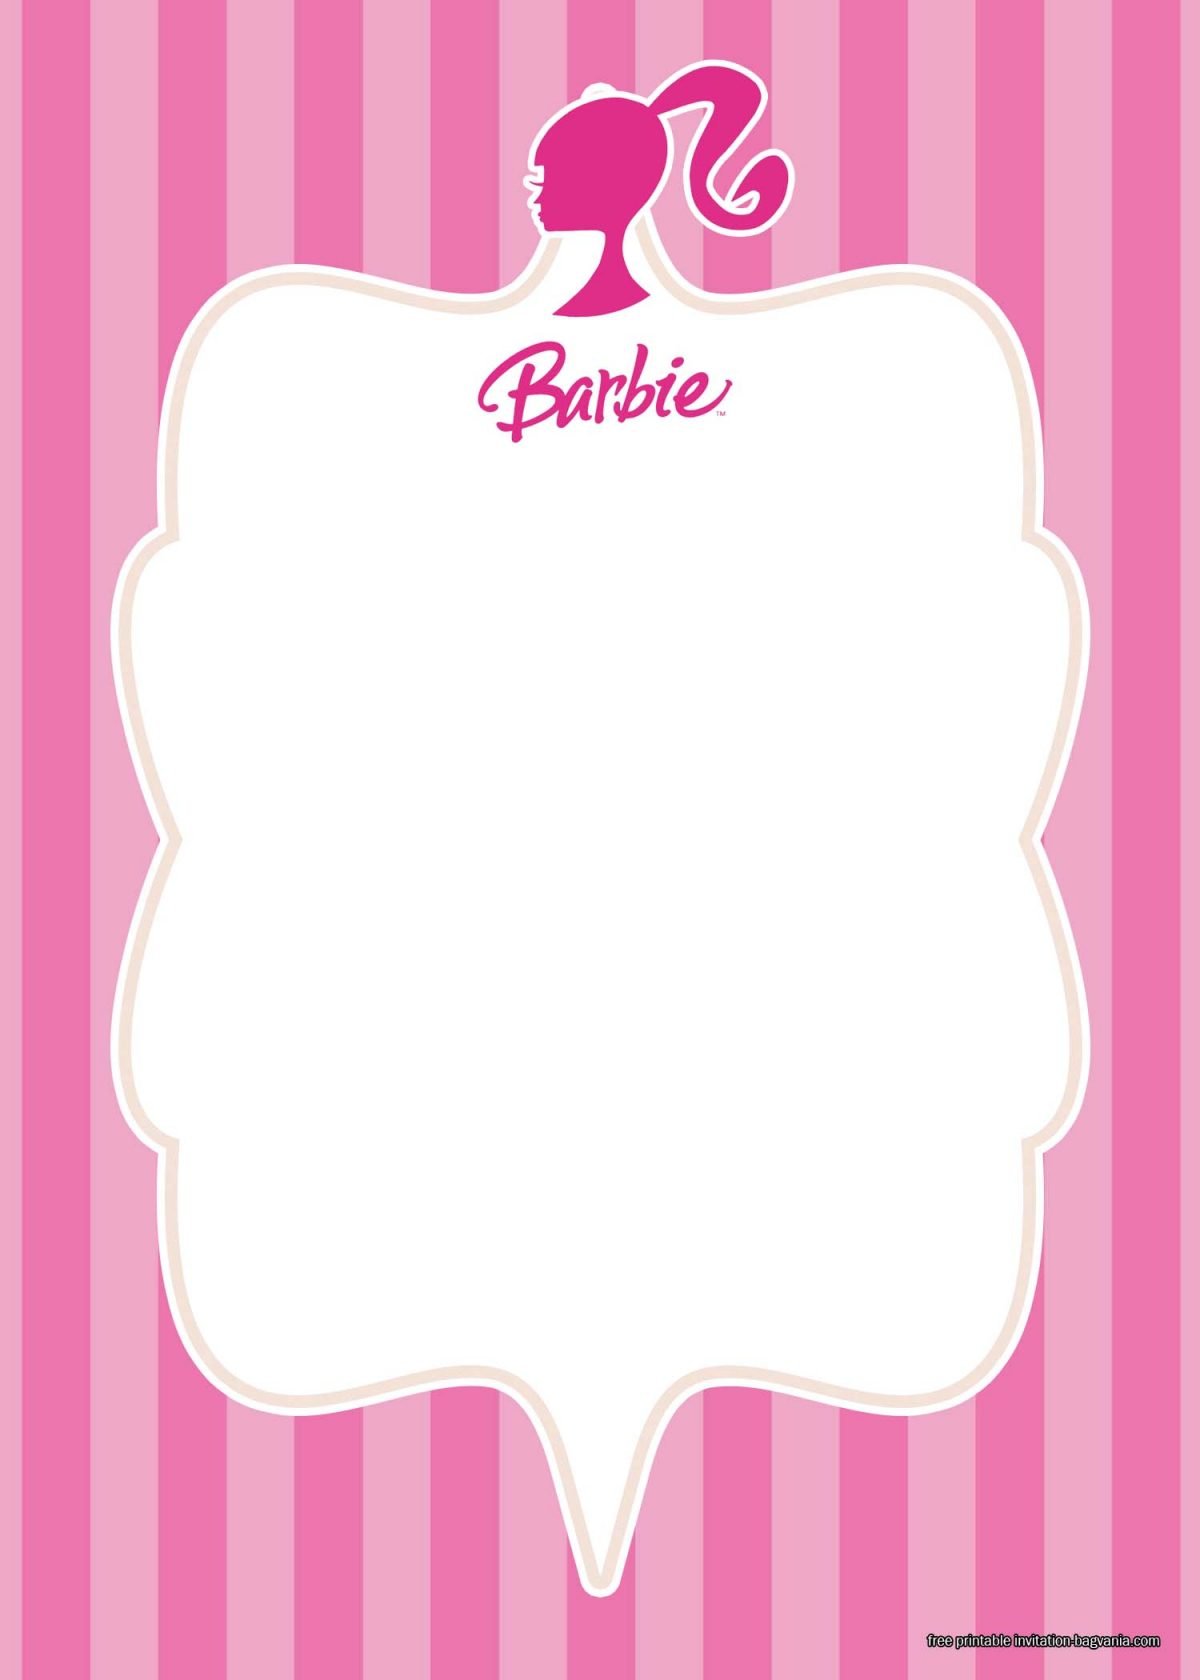 free-printable-barbie-invitation-templates-free-printable-birthday-invitation-templates-bagvania